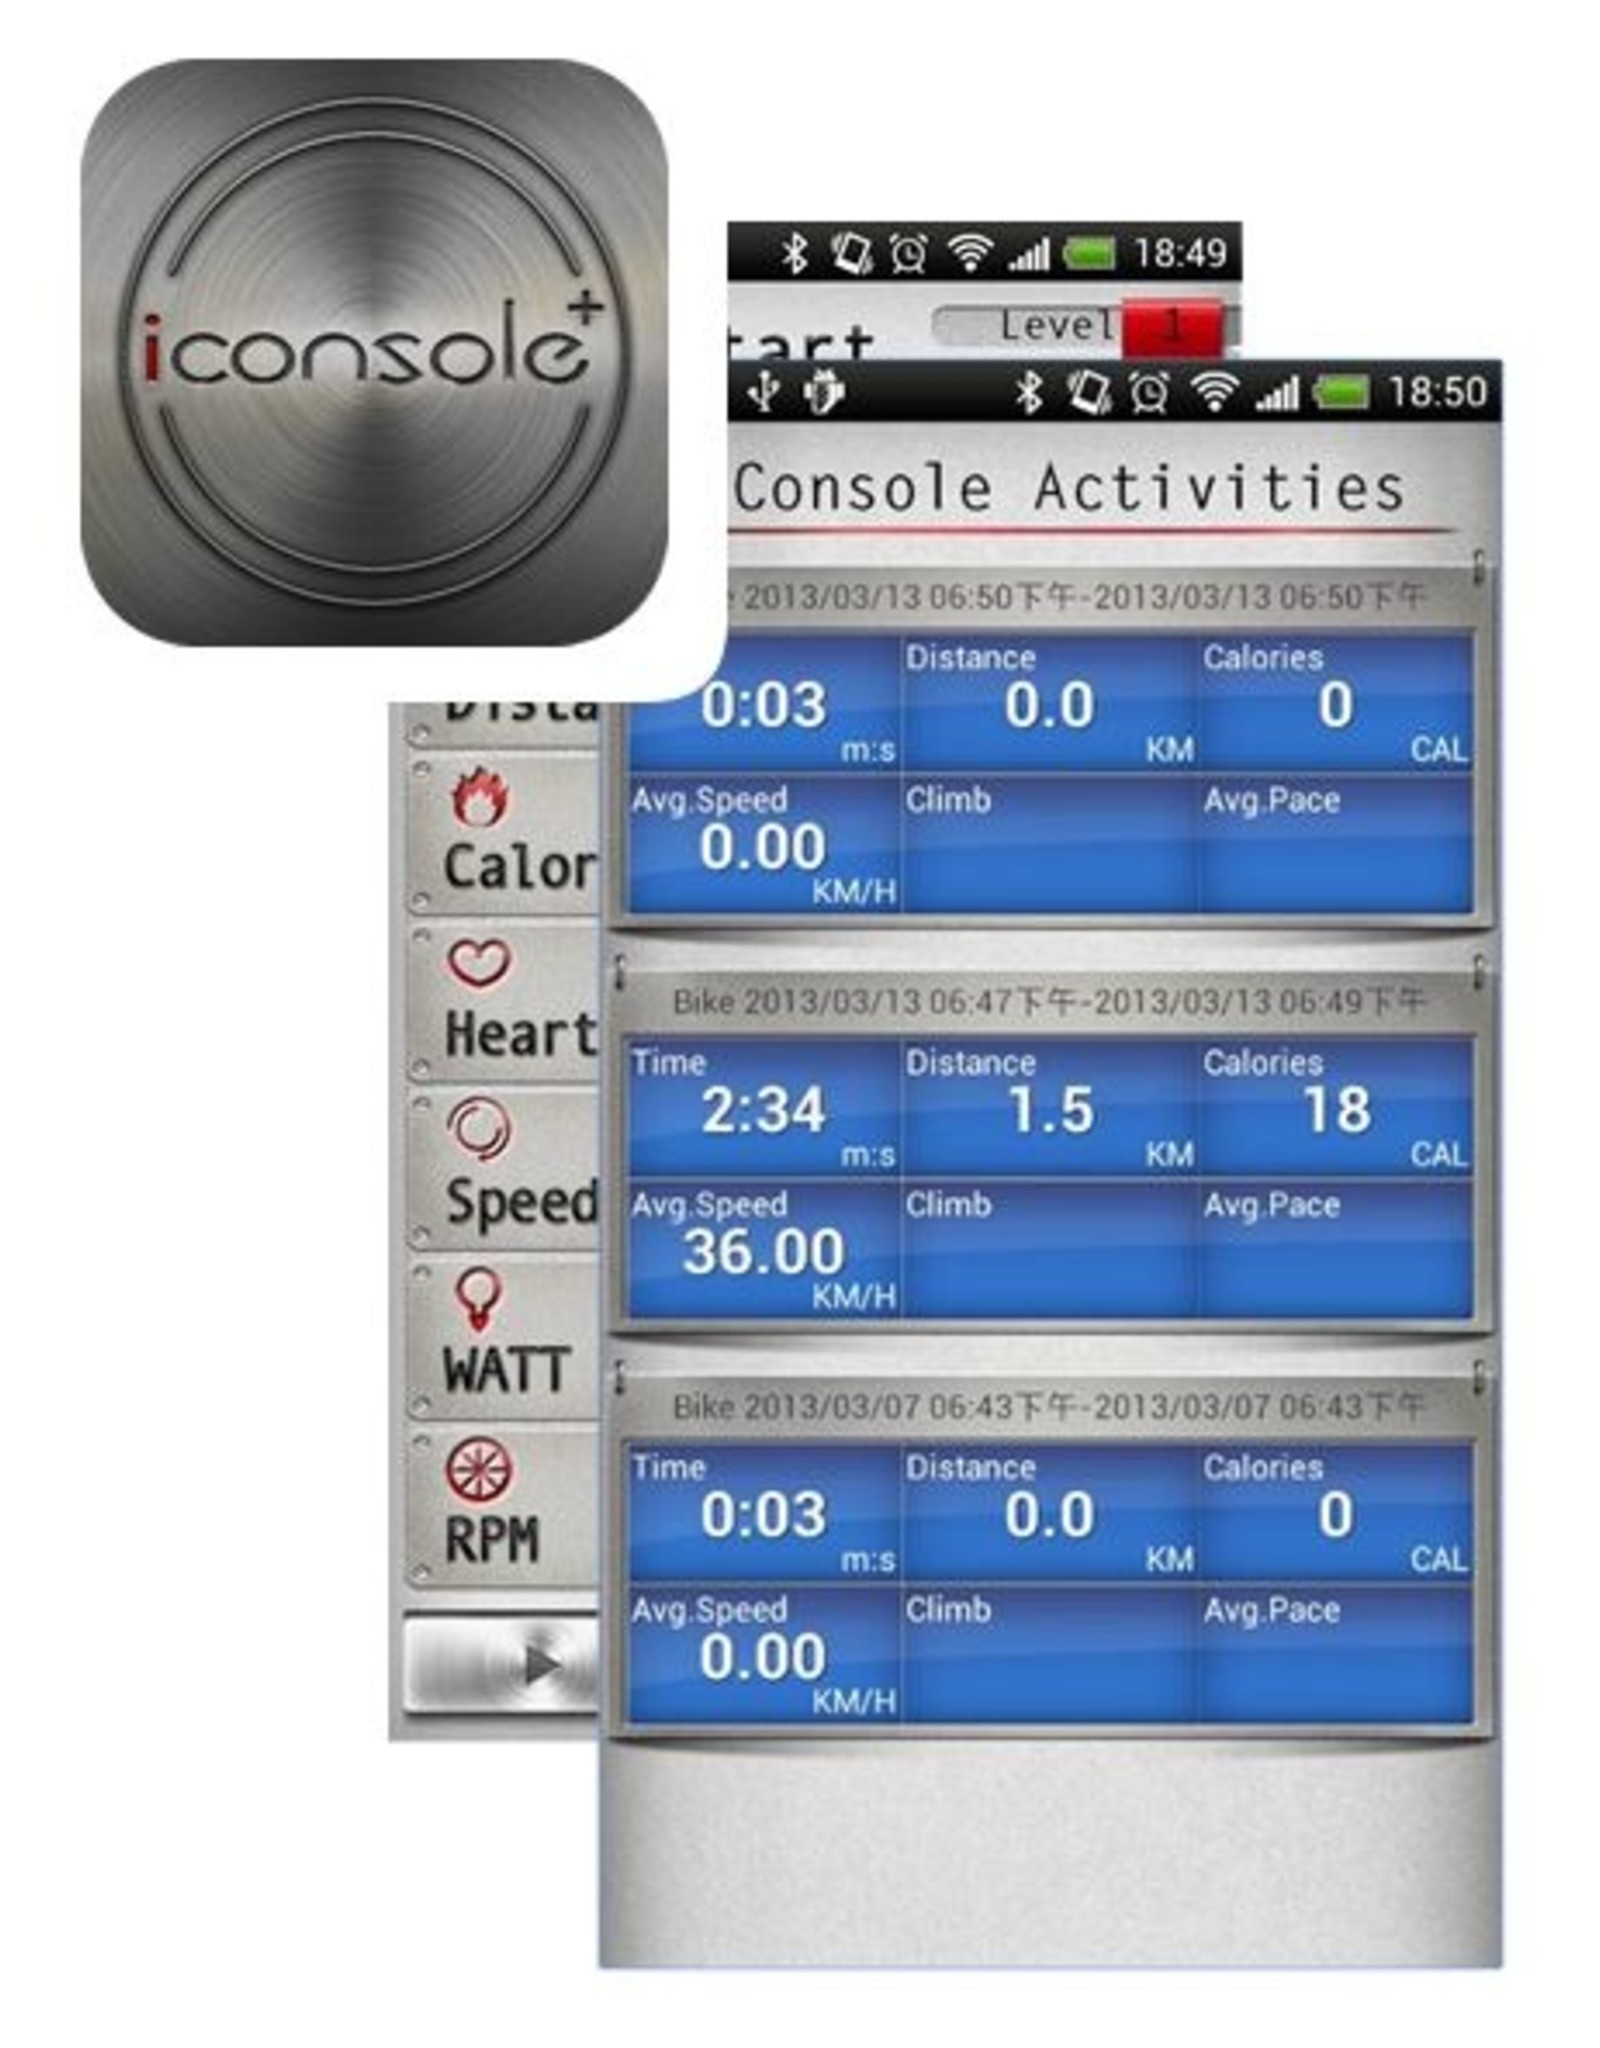 Toorx Fitness Toorx SRX-300 Indoor Cycle met Kinomap en programma's